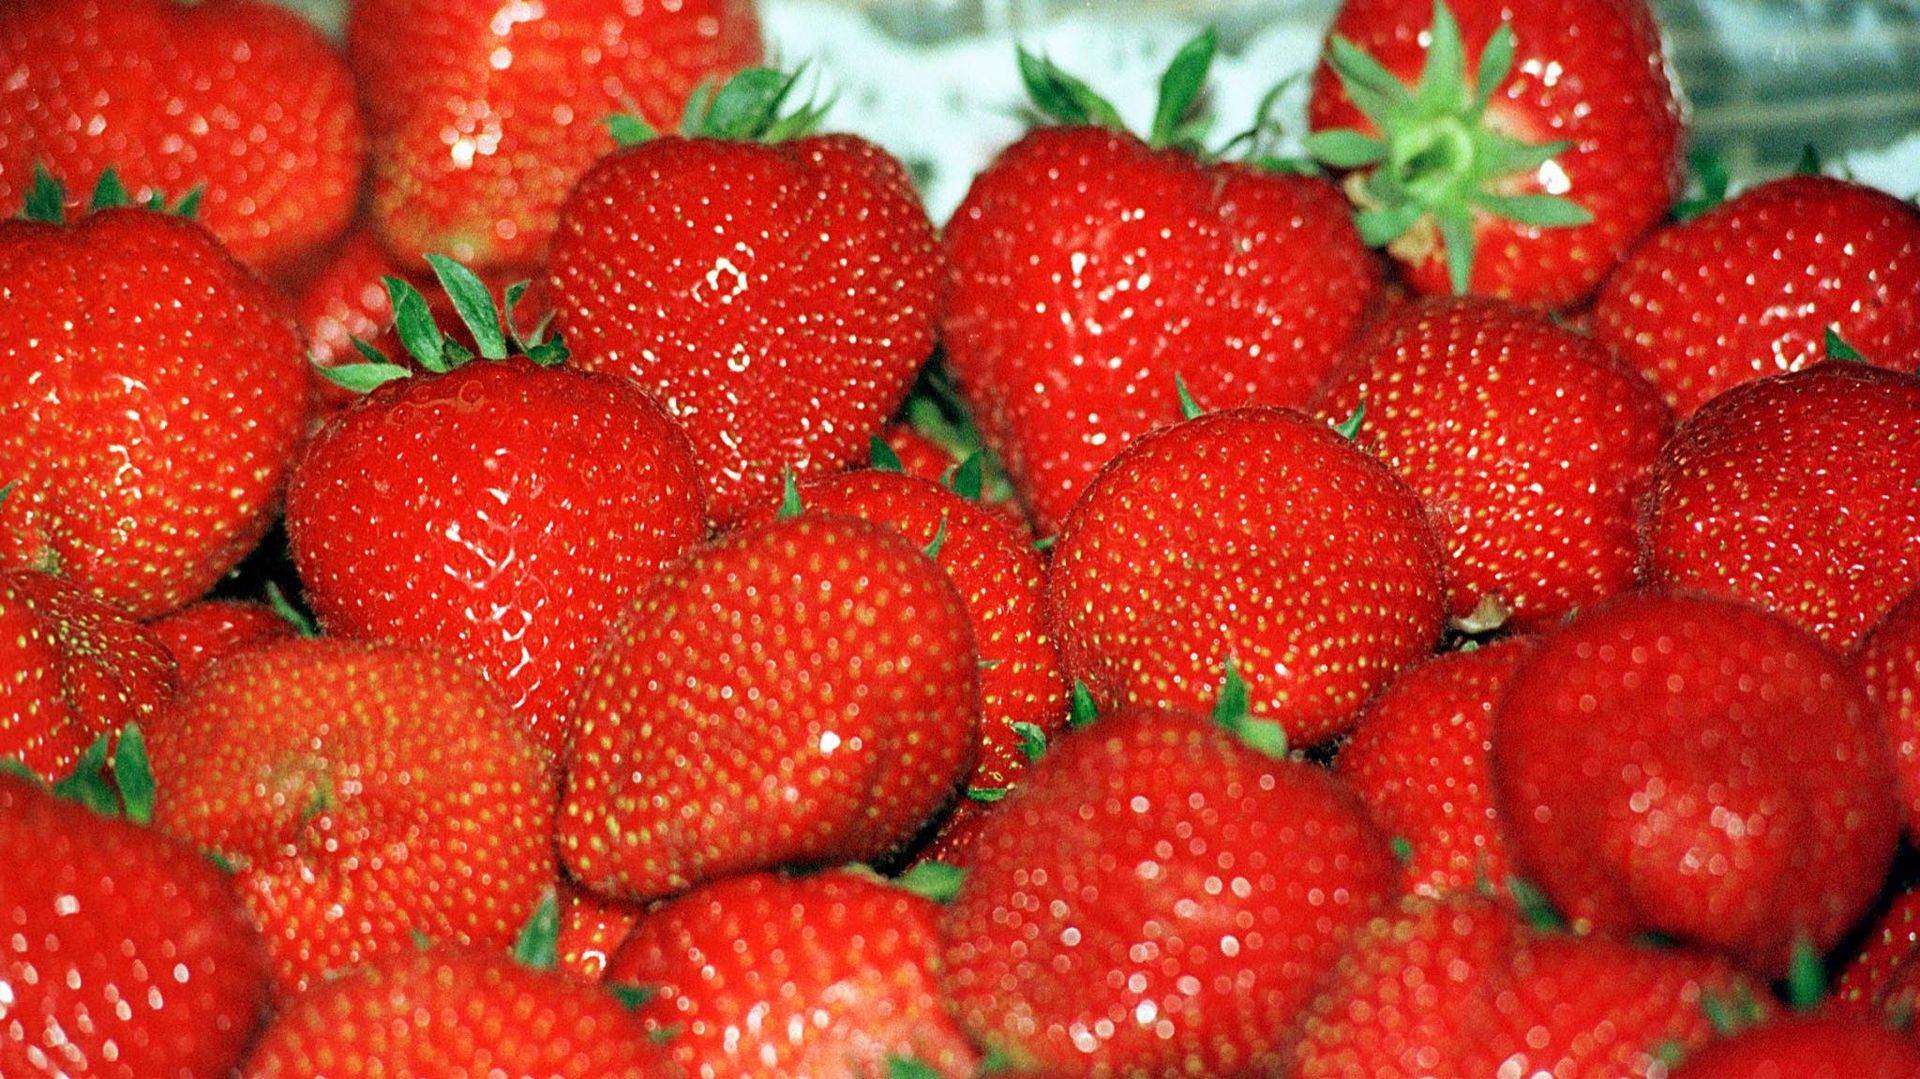 Prix record pour les premières fraises de l'année: 500 euros le kilo